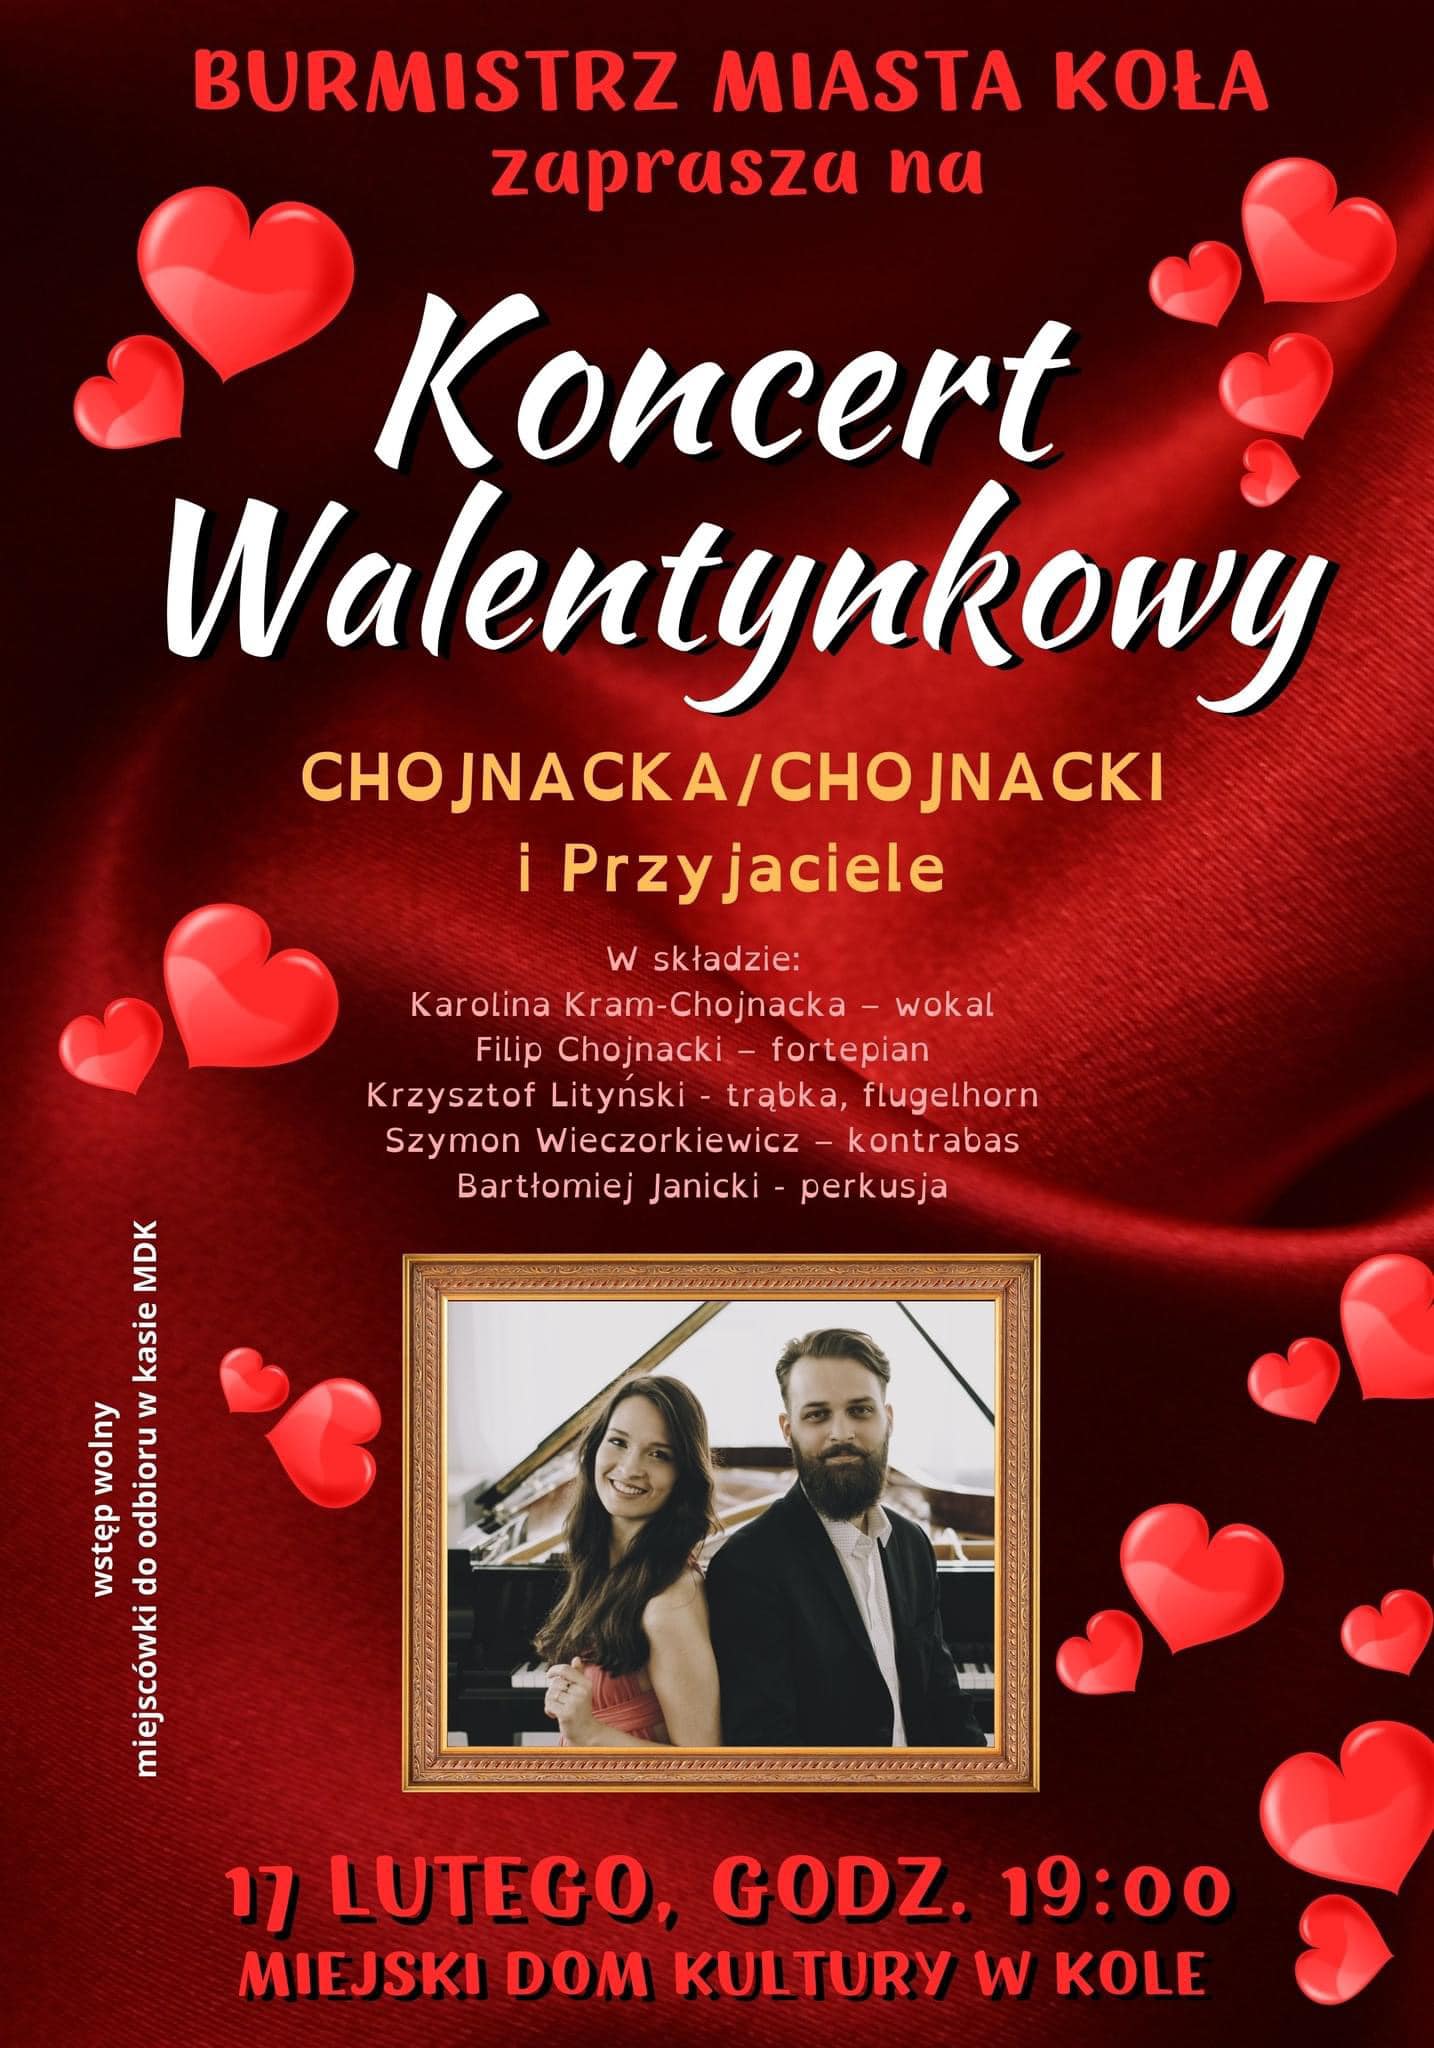 Plakat Koncert Walentynkowy w Miejskim Domu Kultury w Kole